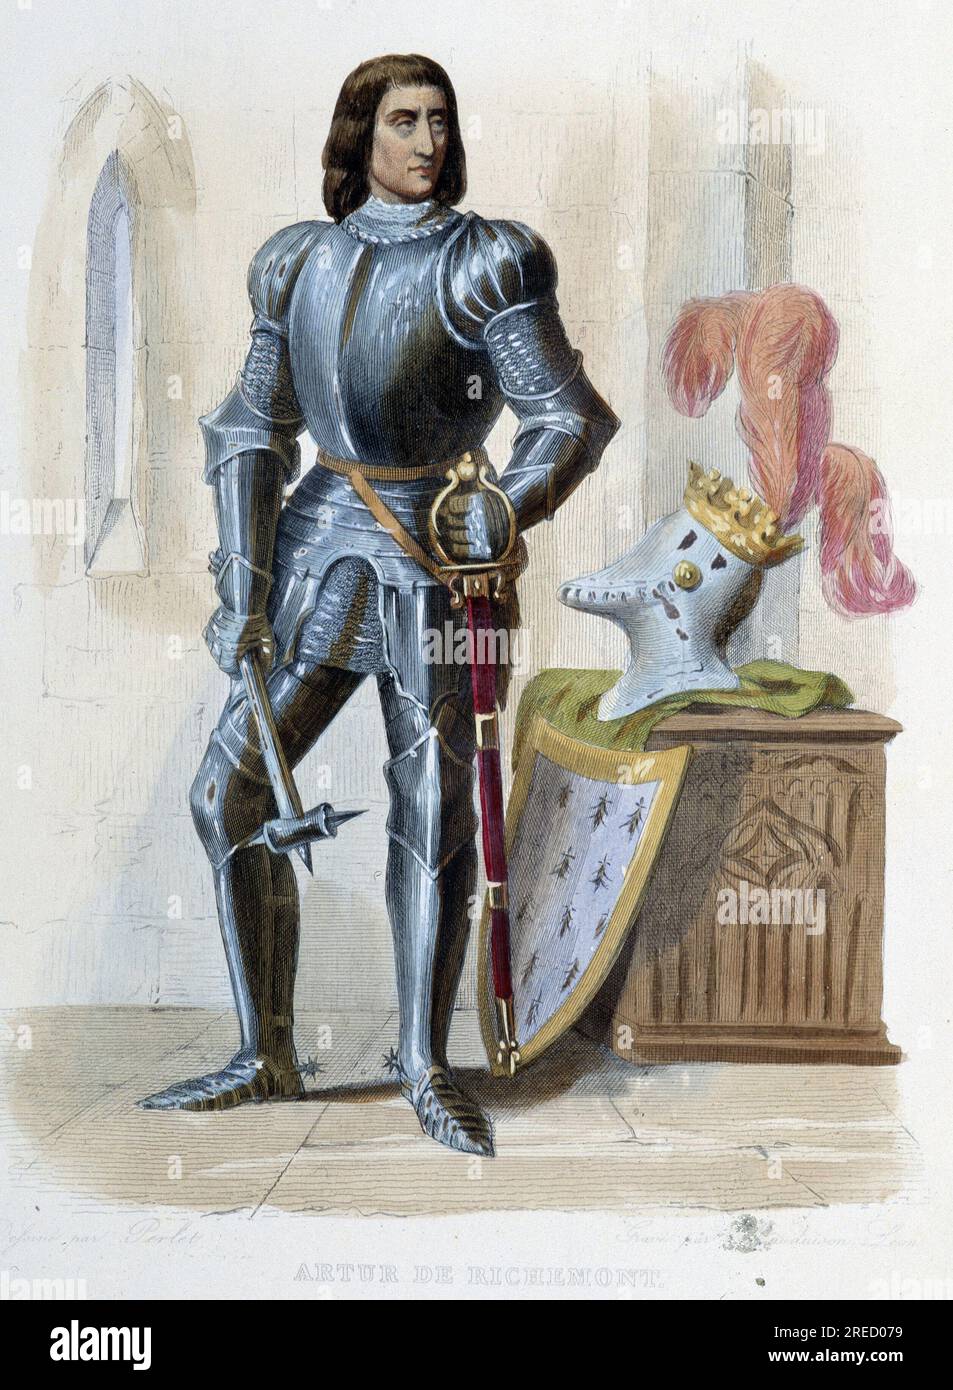 Arthur III de Bretagne, Comte de Richemont, Connetable de France (1393-1458), fils de Jean IV, duc de Bretagne. Il a combattu au cote de Jeanne d'Arc à Patay en 1429.- in 'Le Plutarque francais', par Mennechet, Paris, 1844-47 Stock Photo